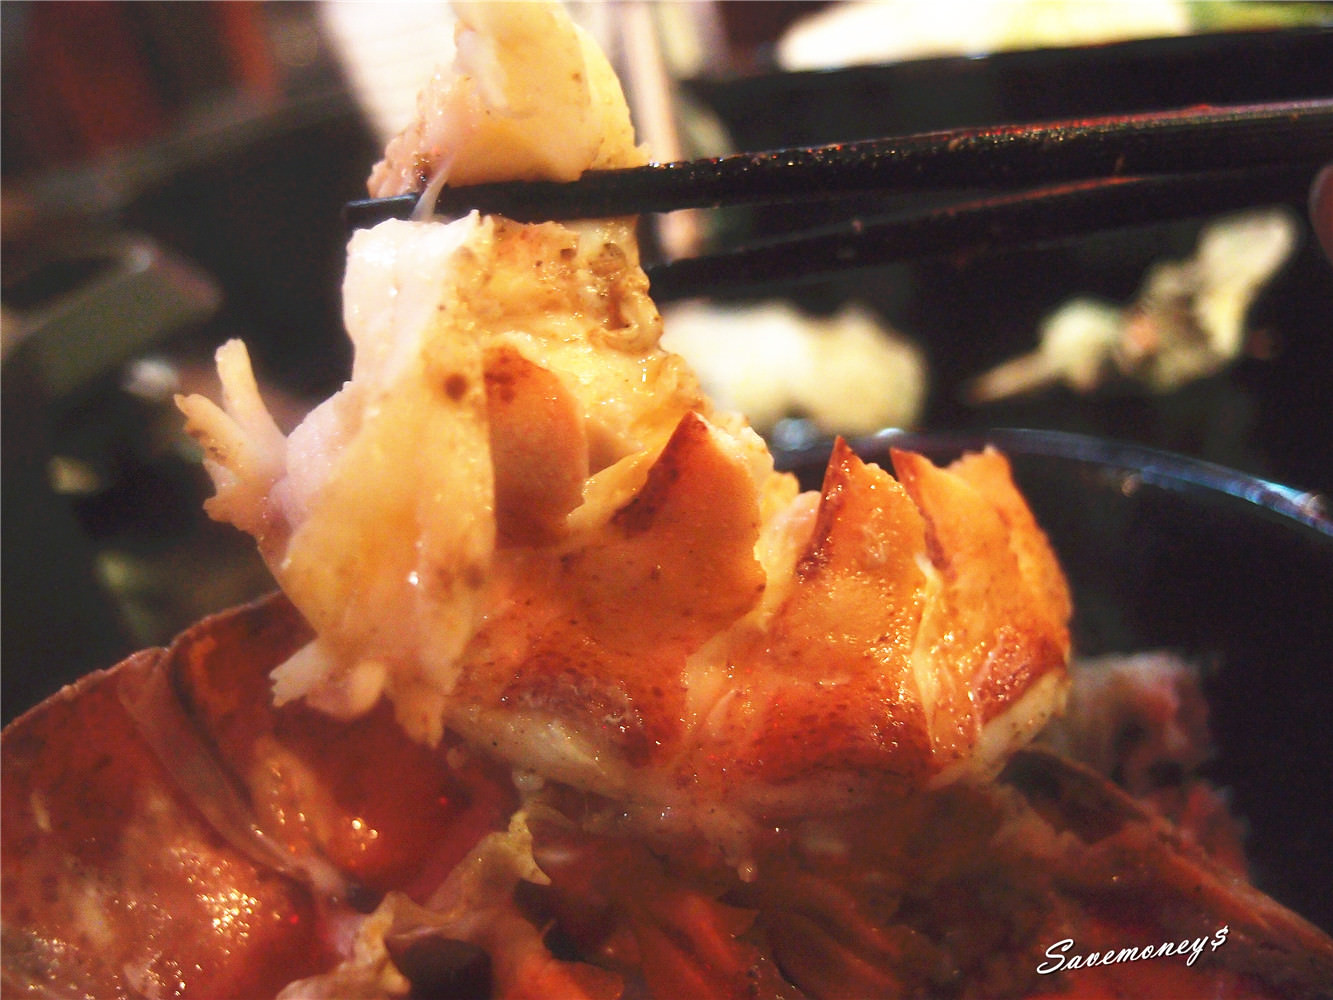 【台中美食祭】肉魂鑄鐵料理~波士頓龍蝦+安格斯牛肉,雙人經典套餐大滿足!